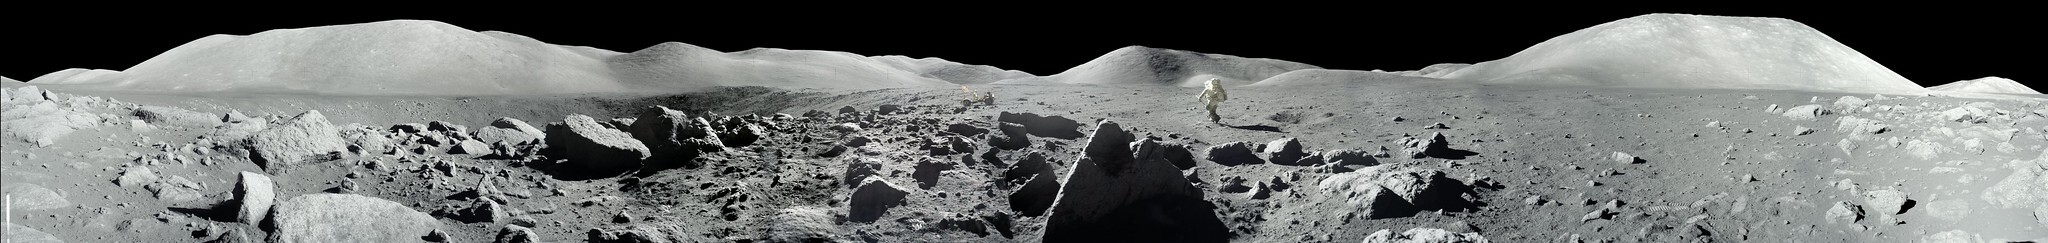 Apollo 11 2